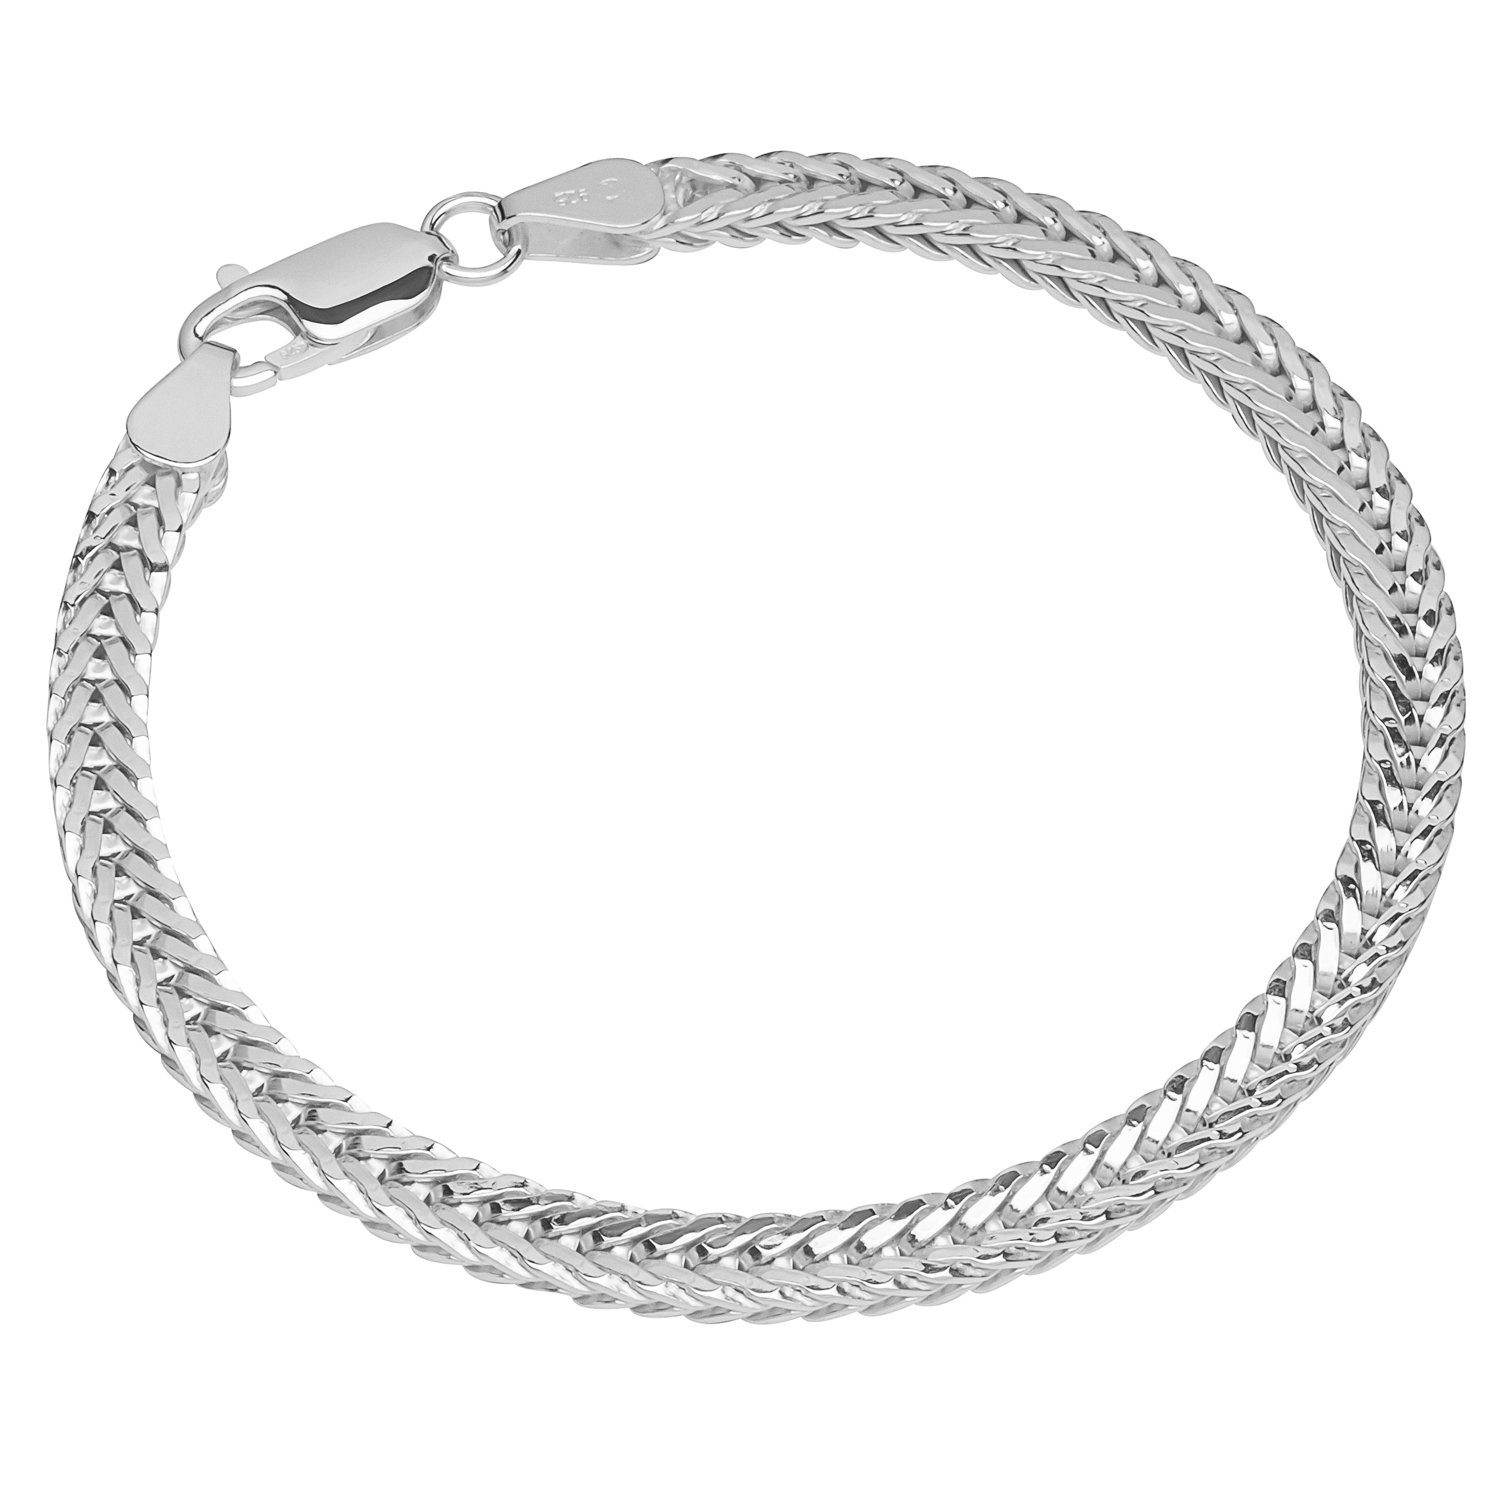 NKlaus Silberarmband Armband 925 SterlingSilber 19cm Fuchsschwanzketten | Silberarmbänder